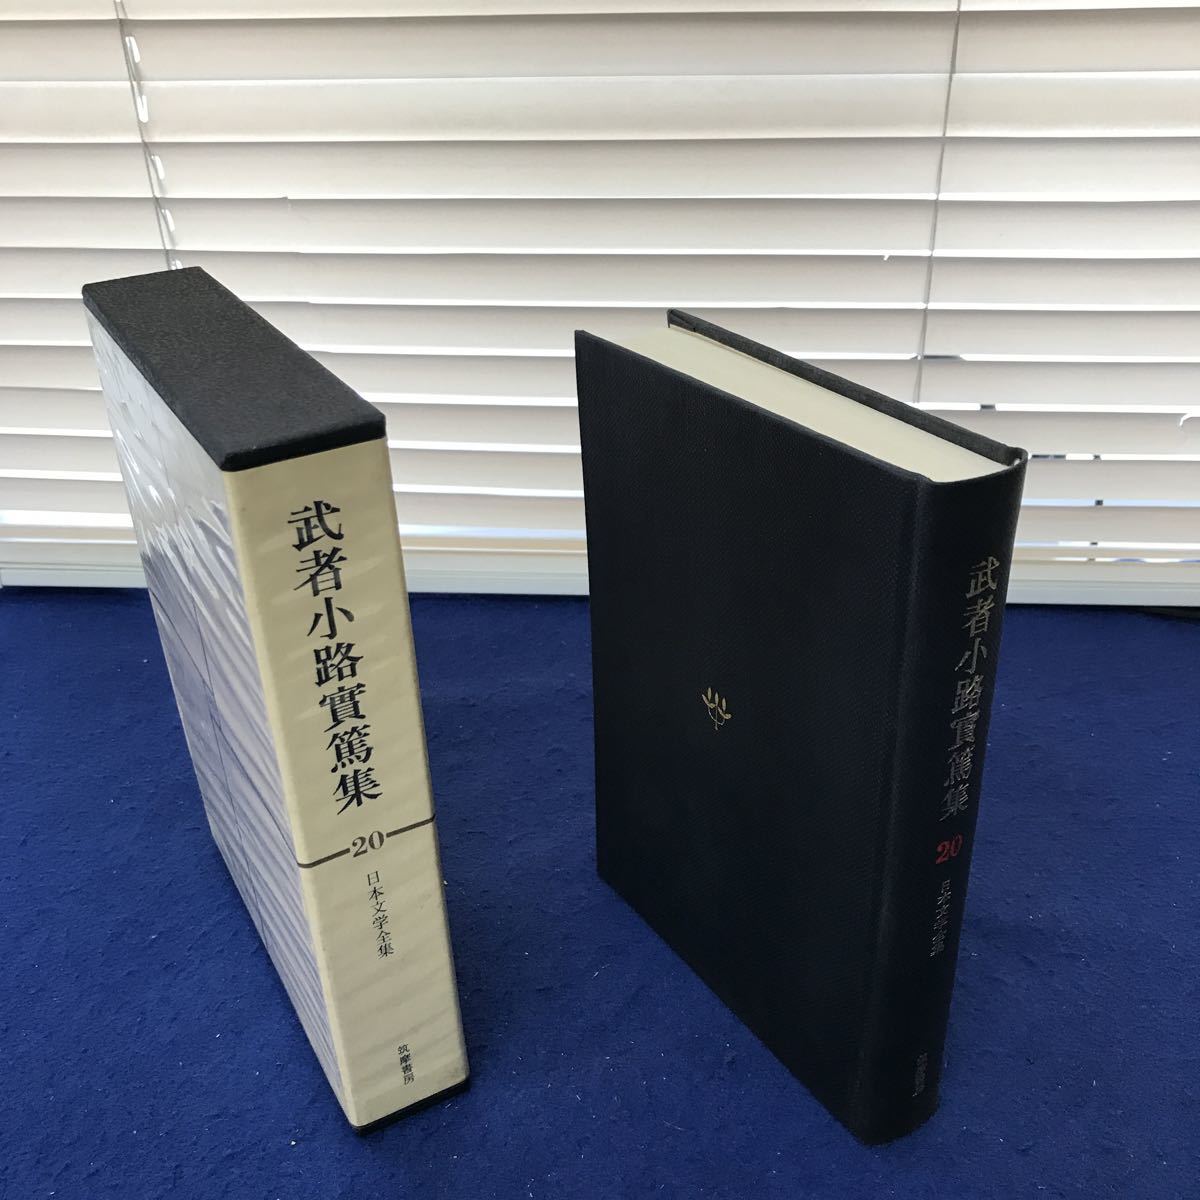 I13-033 день текст . полное собрание сочинений 20 Mushakoji Saneatsu сборник .. книжный магазин 